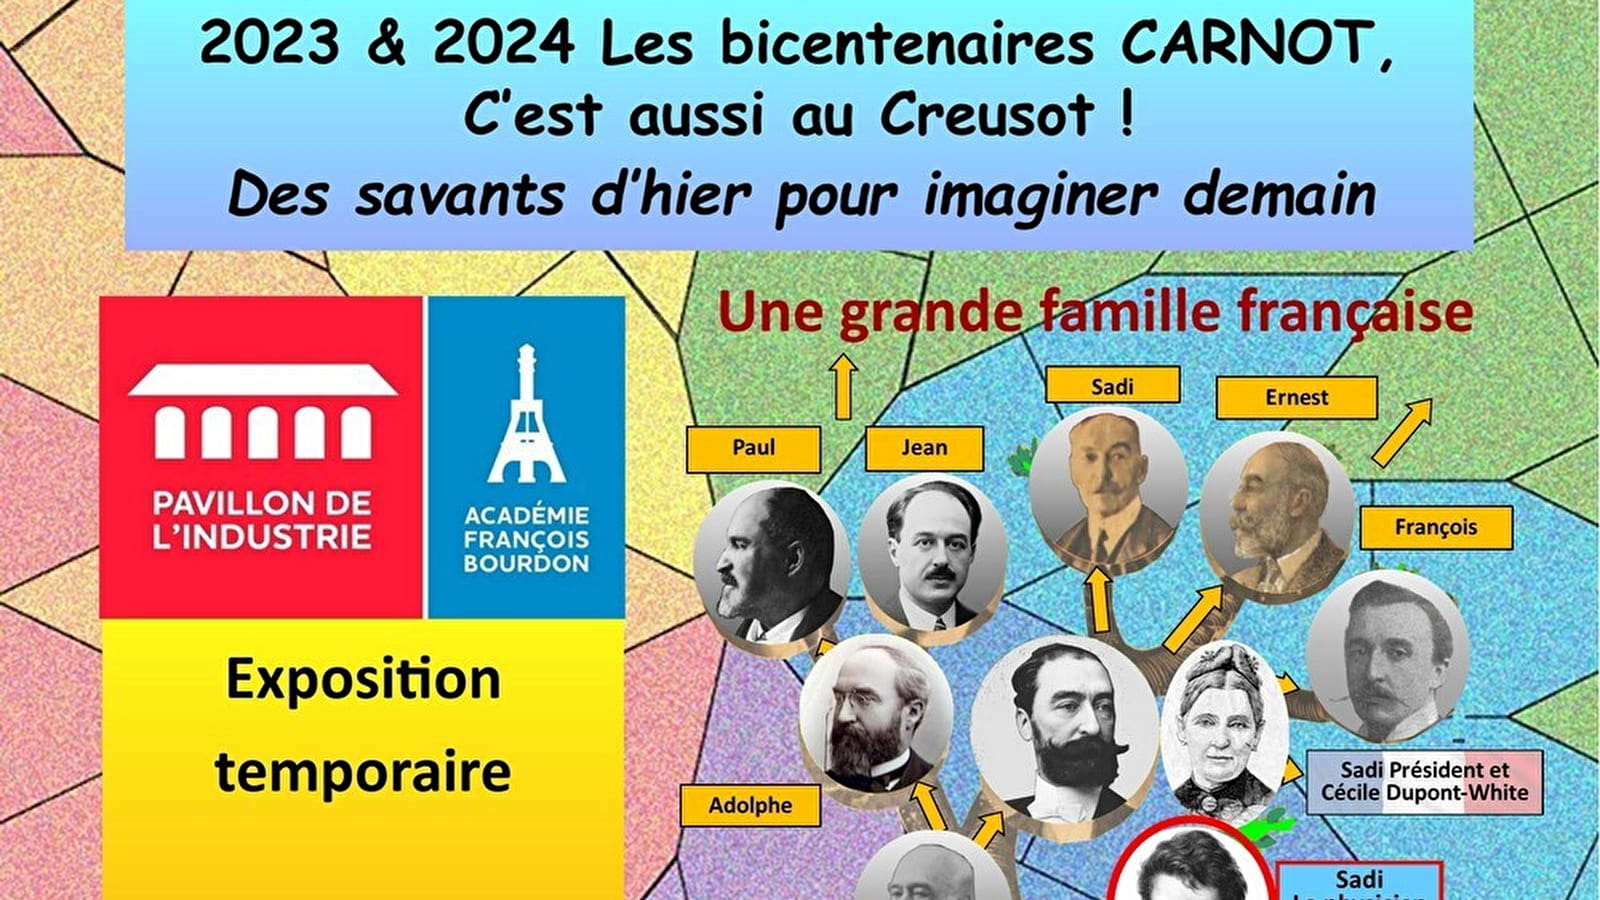 Exposition temporaire : "2023-24 - Les bicentenaires Carnot, c